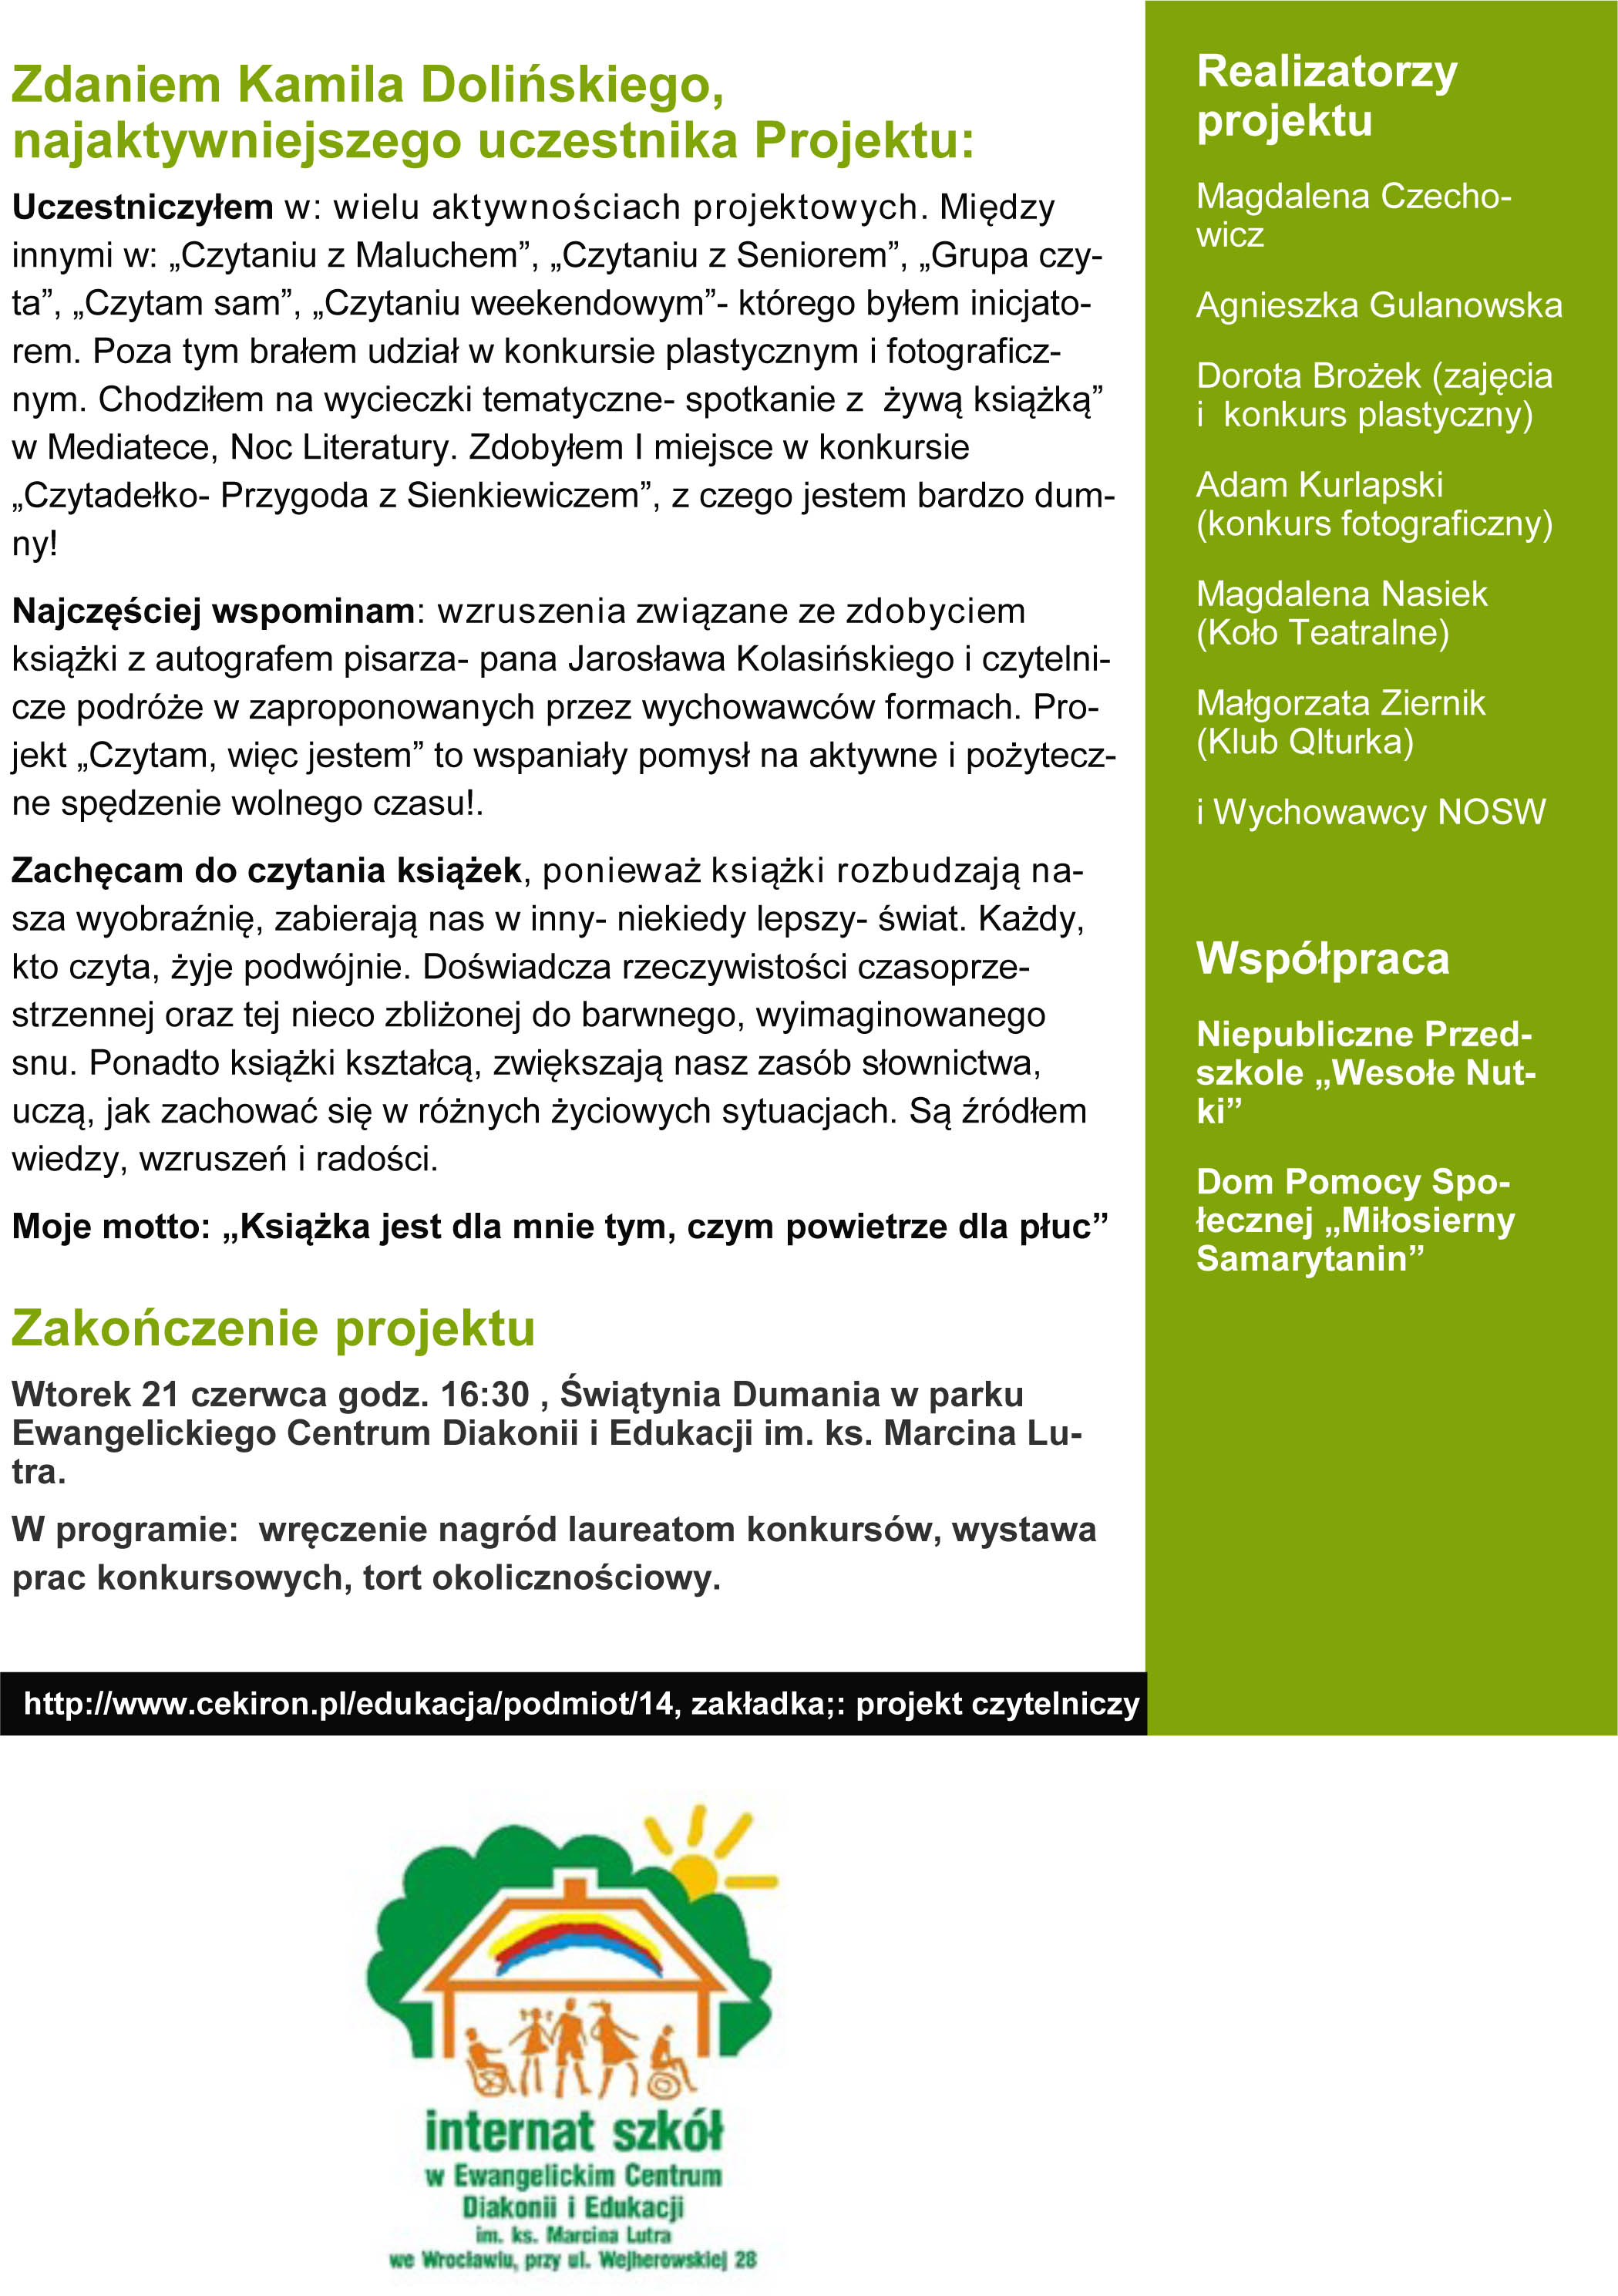 broszura_projektowa-4